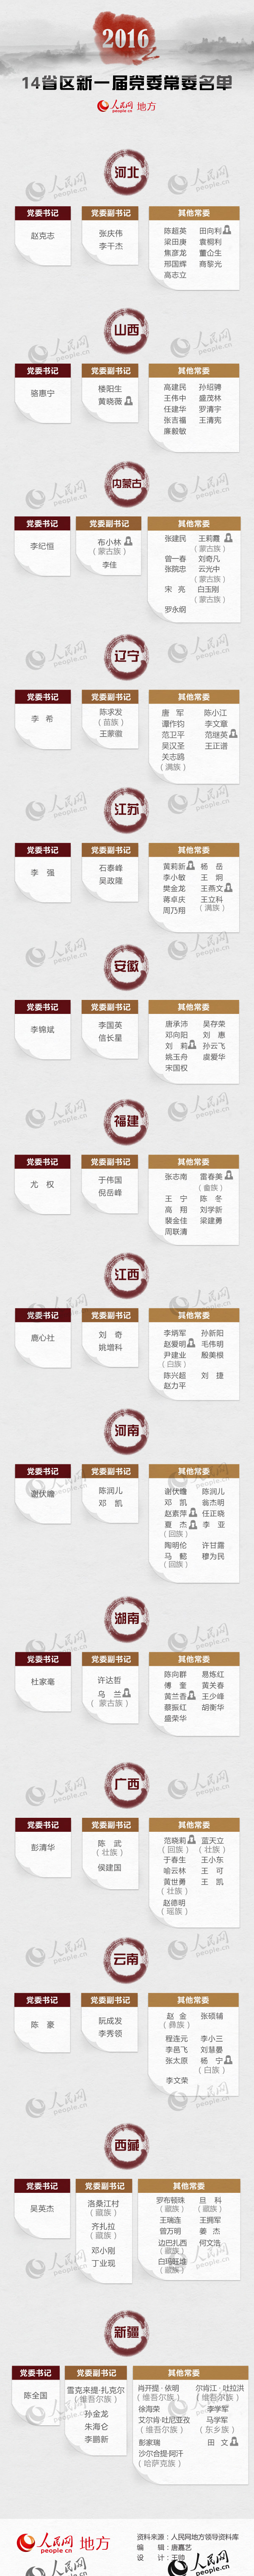 2016年14省区省级党委换届 首现“70后”常委(名单)